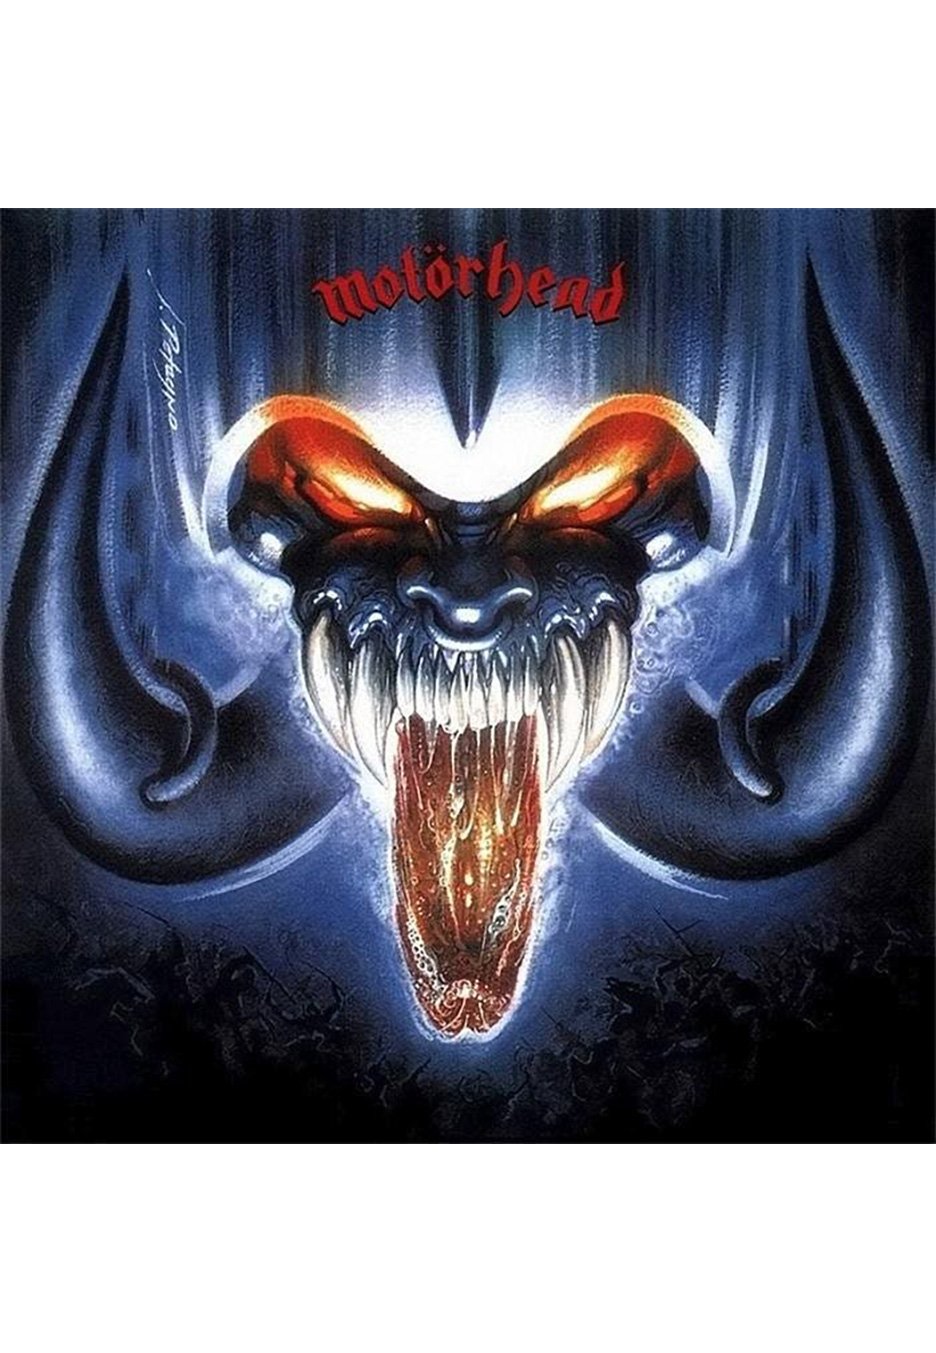 Motörhead - Rock 'N' Roll - Vinyl